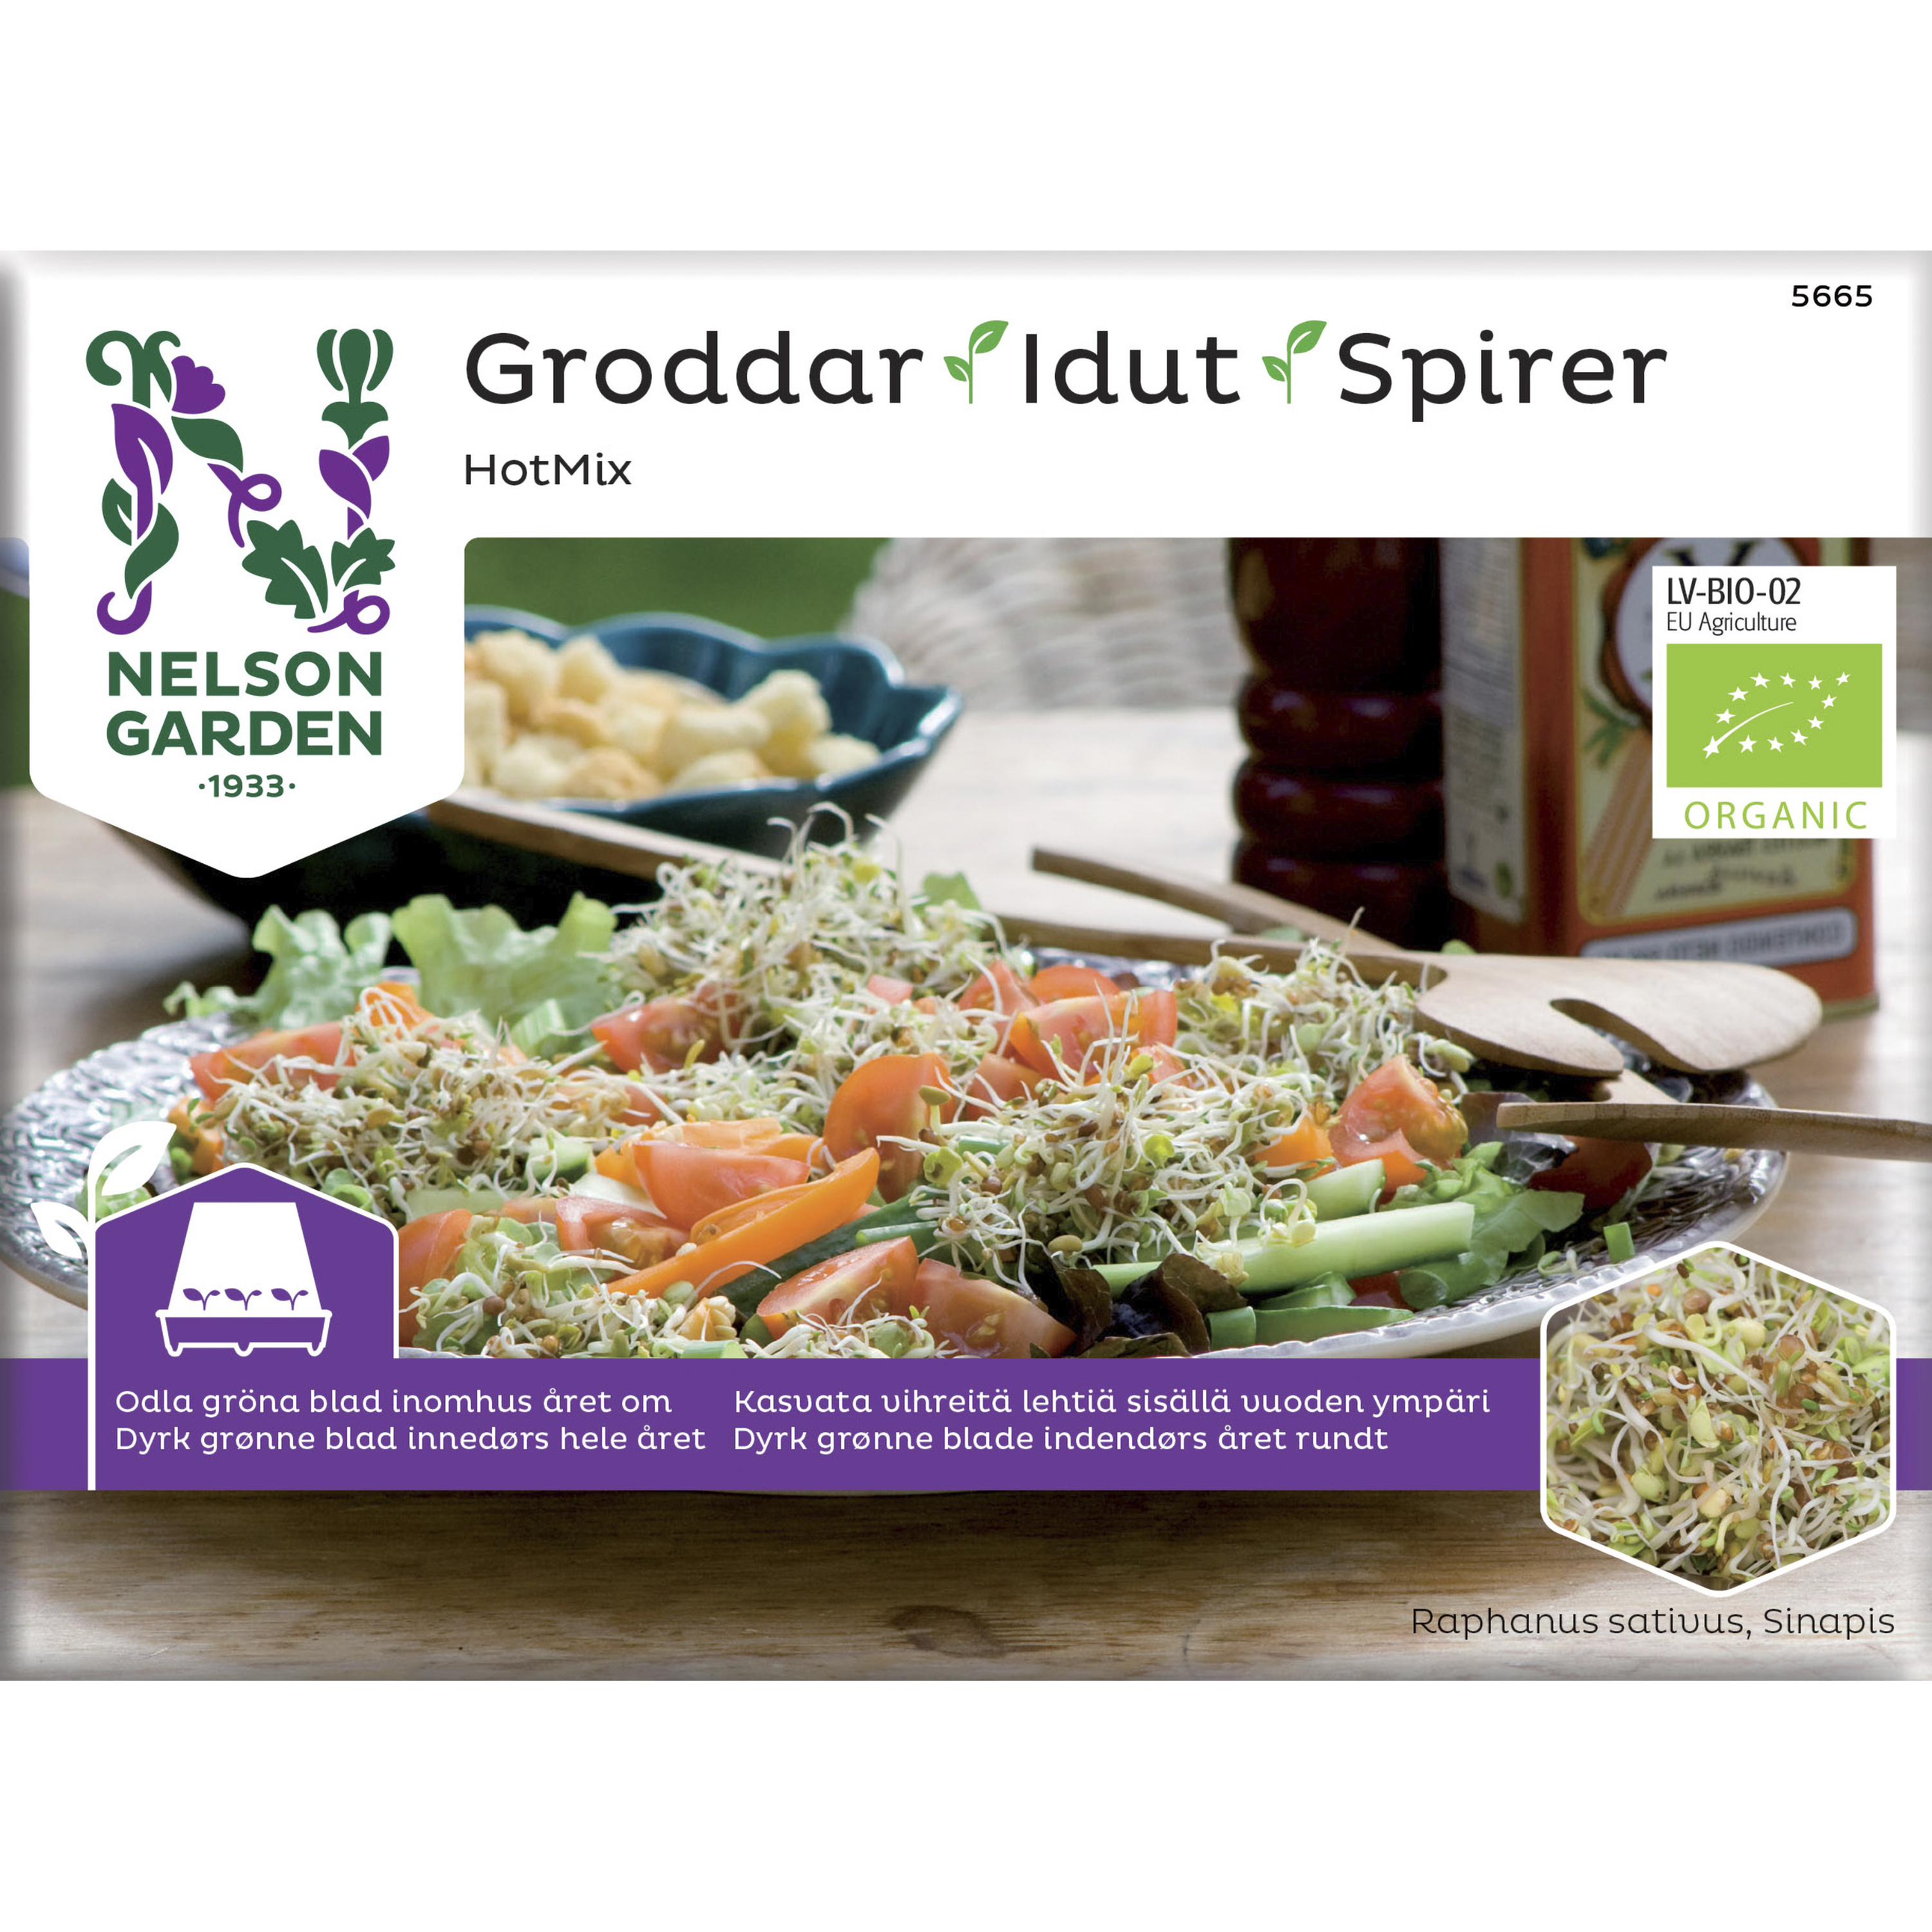 Groddar Nelson Garden HotMix Organic